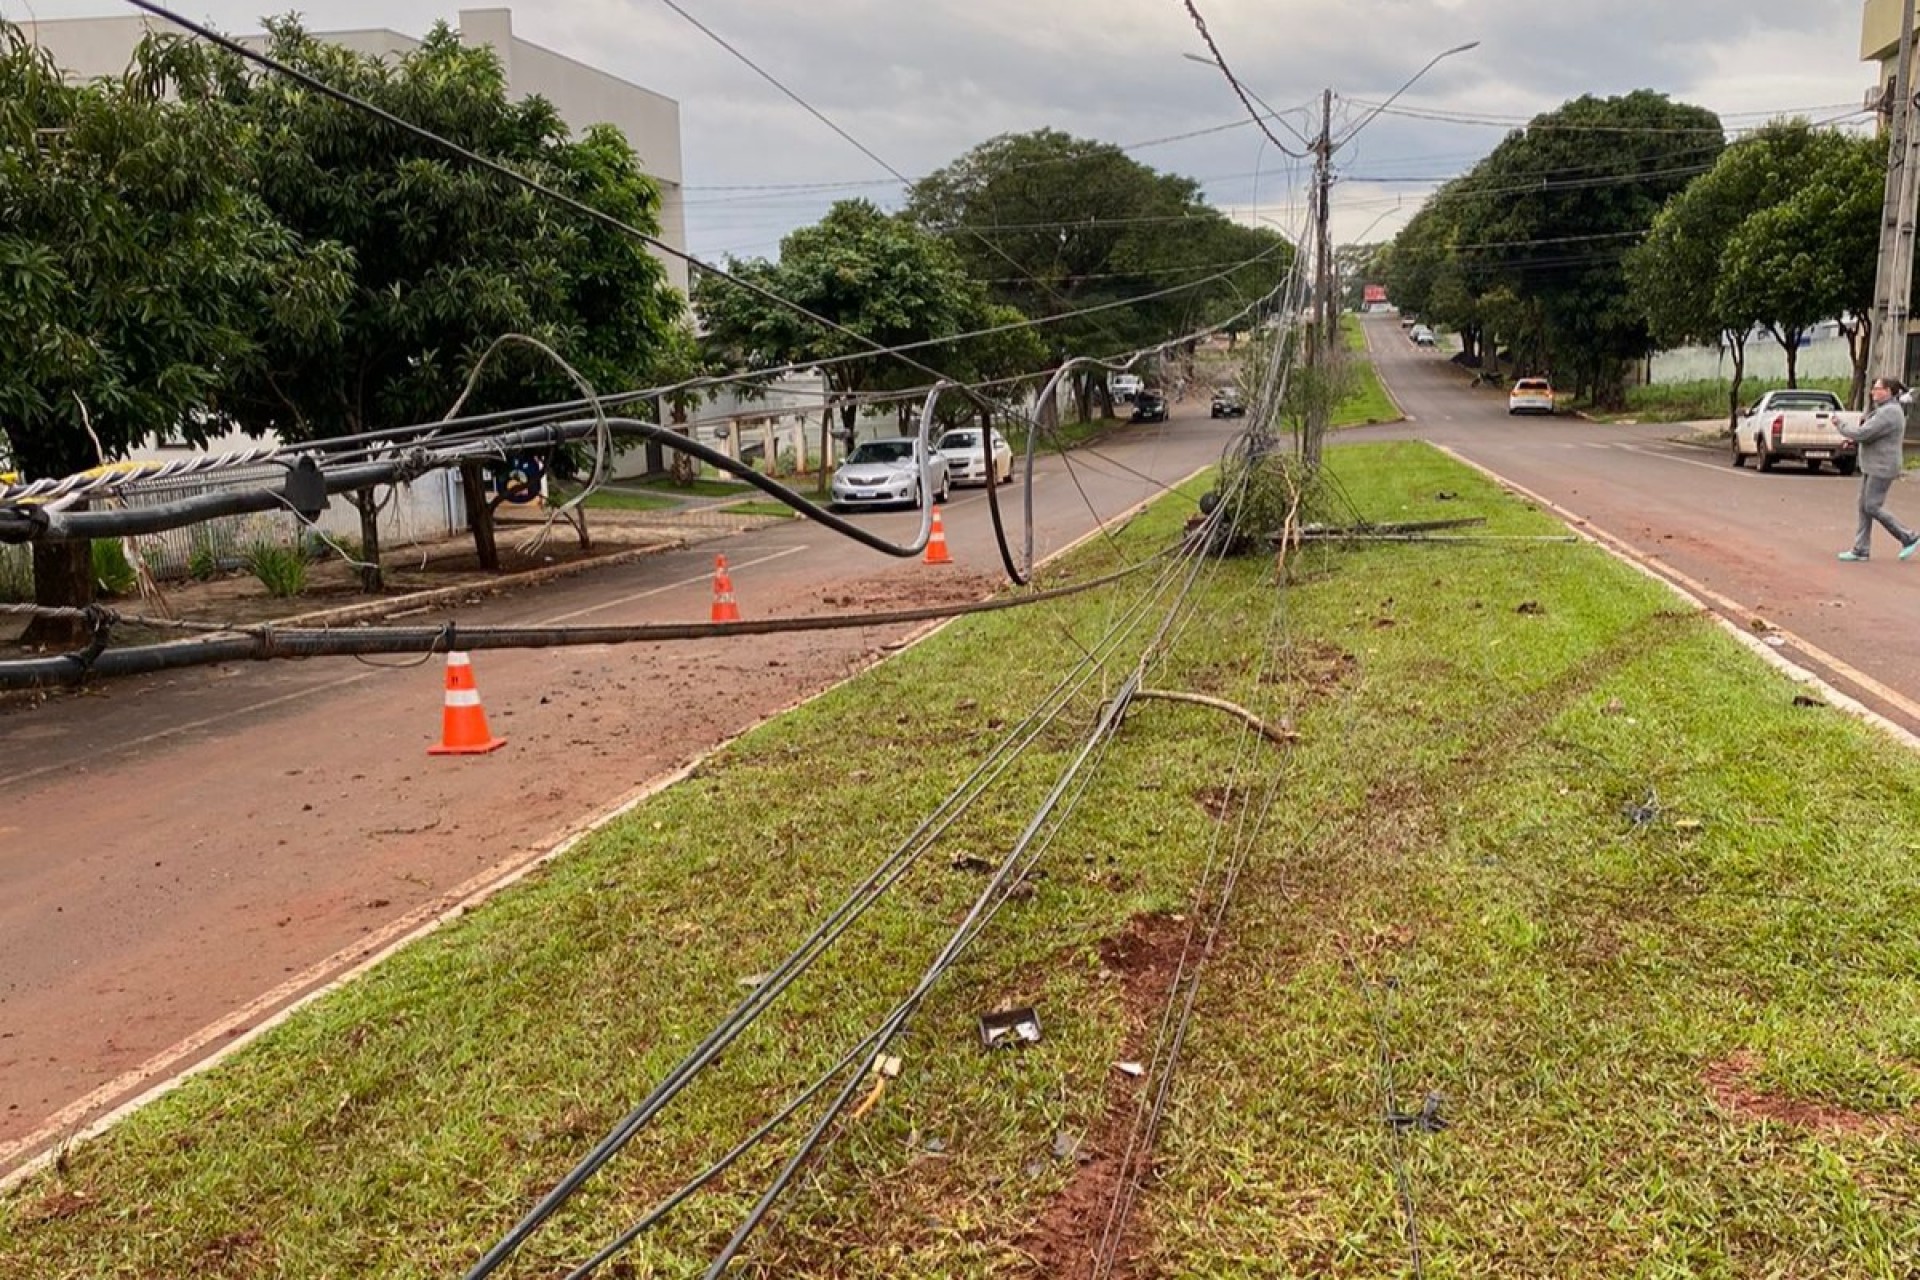 Medianeira: Vídeo mostra caminhonete colidindo e derrubando poste no Bairro Cidade Alta